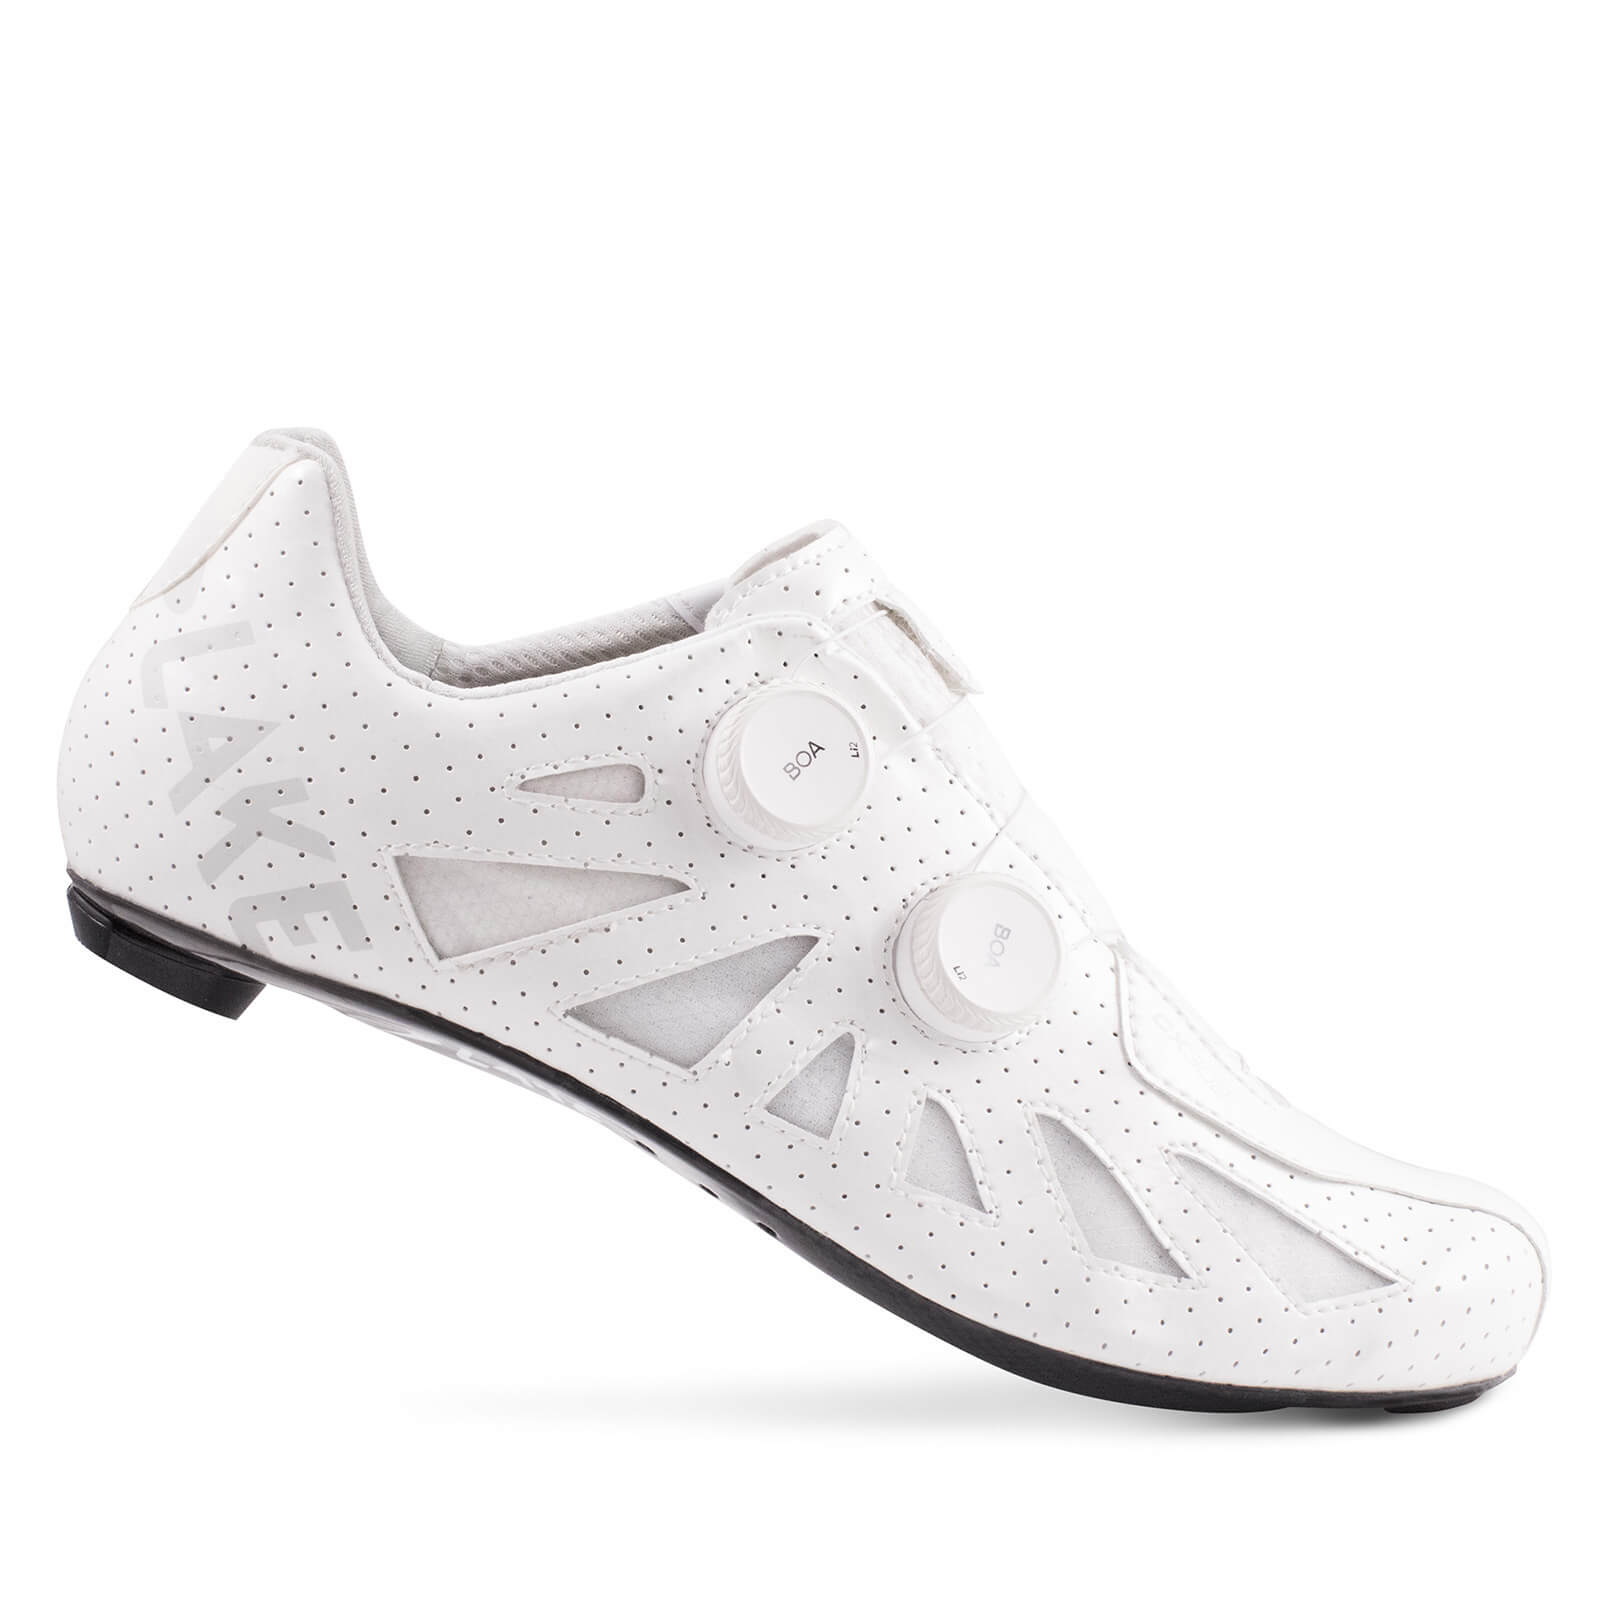 Lake CX302 Road Shoes - EU43 - White